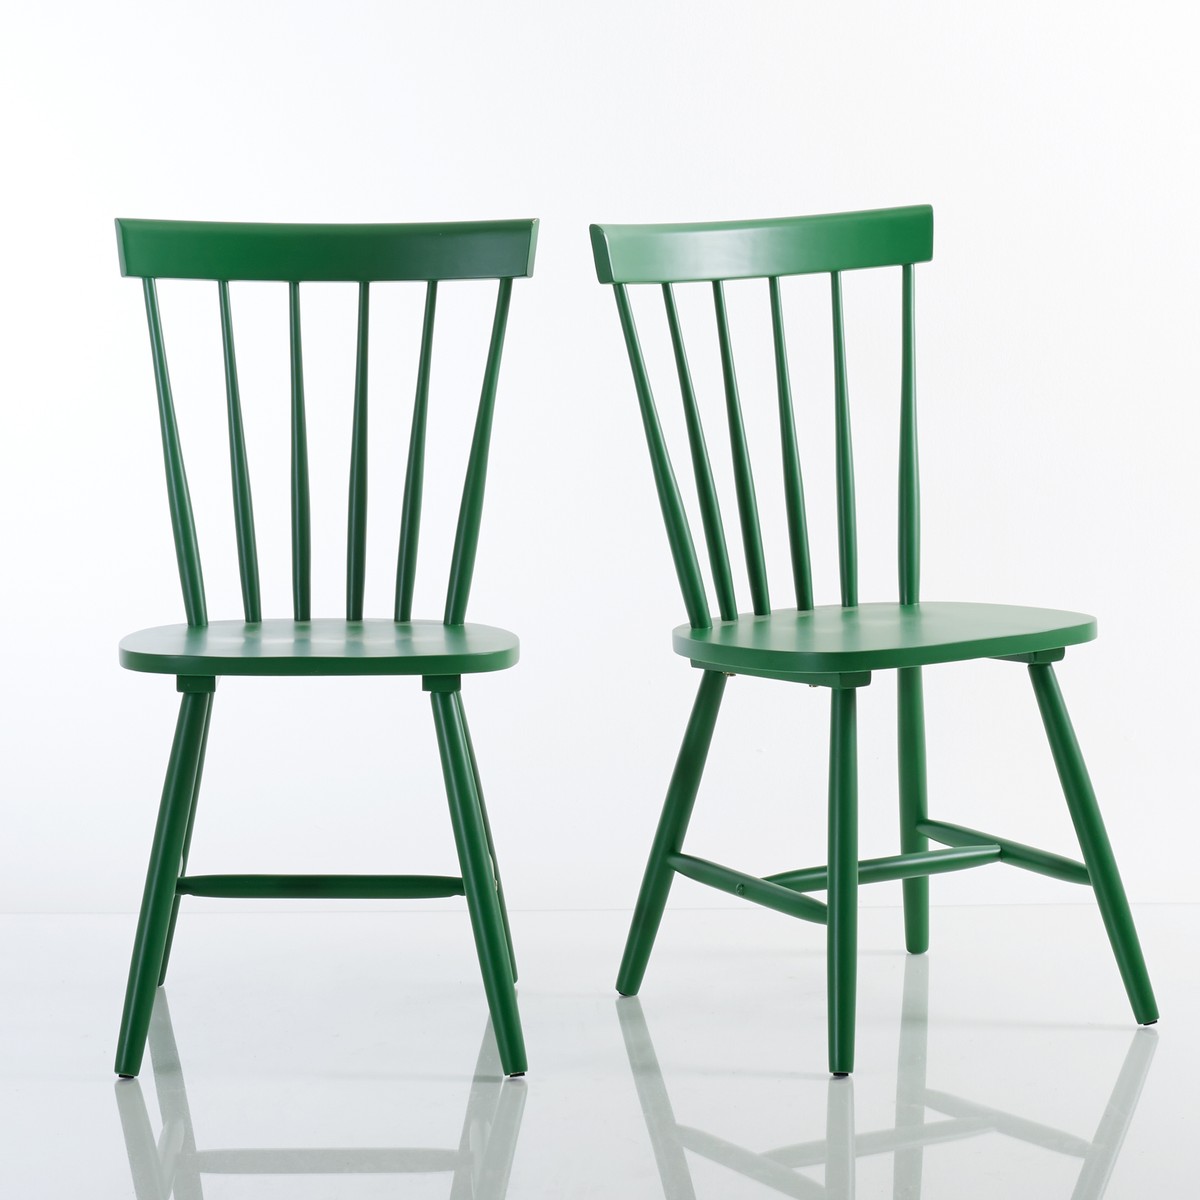 La Redoute Interieurs комплект из 2 стульев с решетчатой спинкой, Windsor